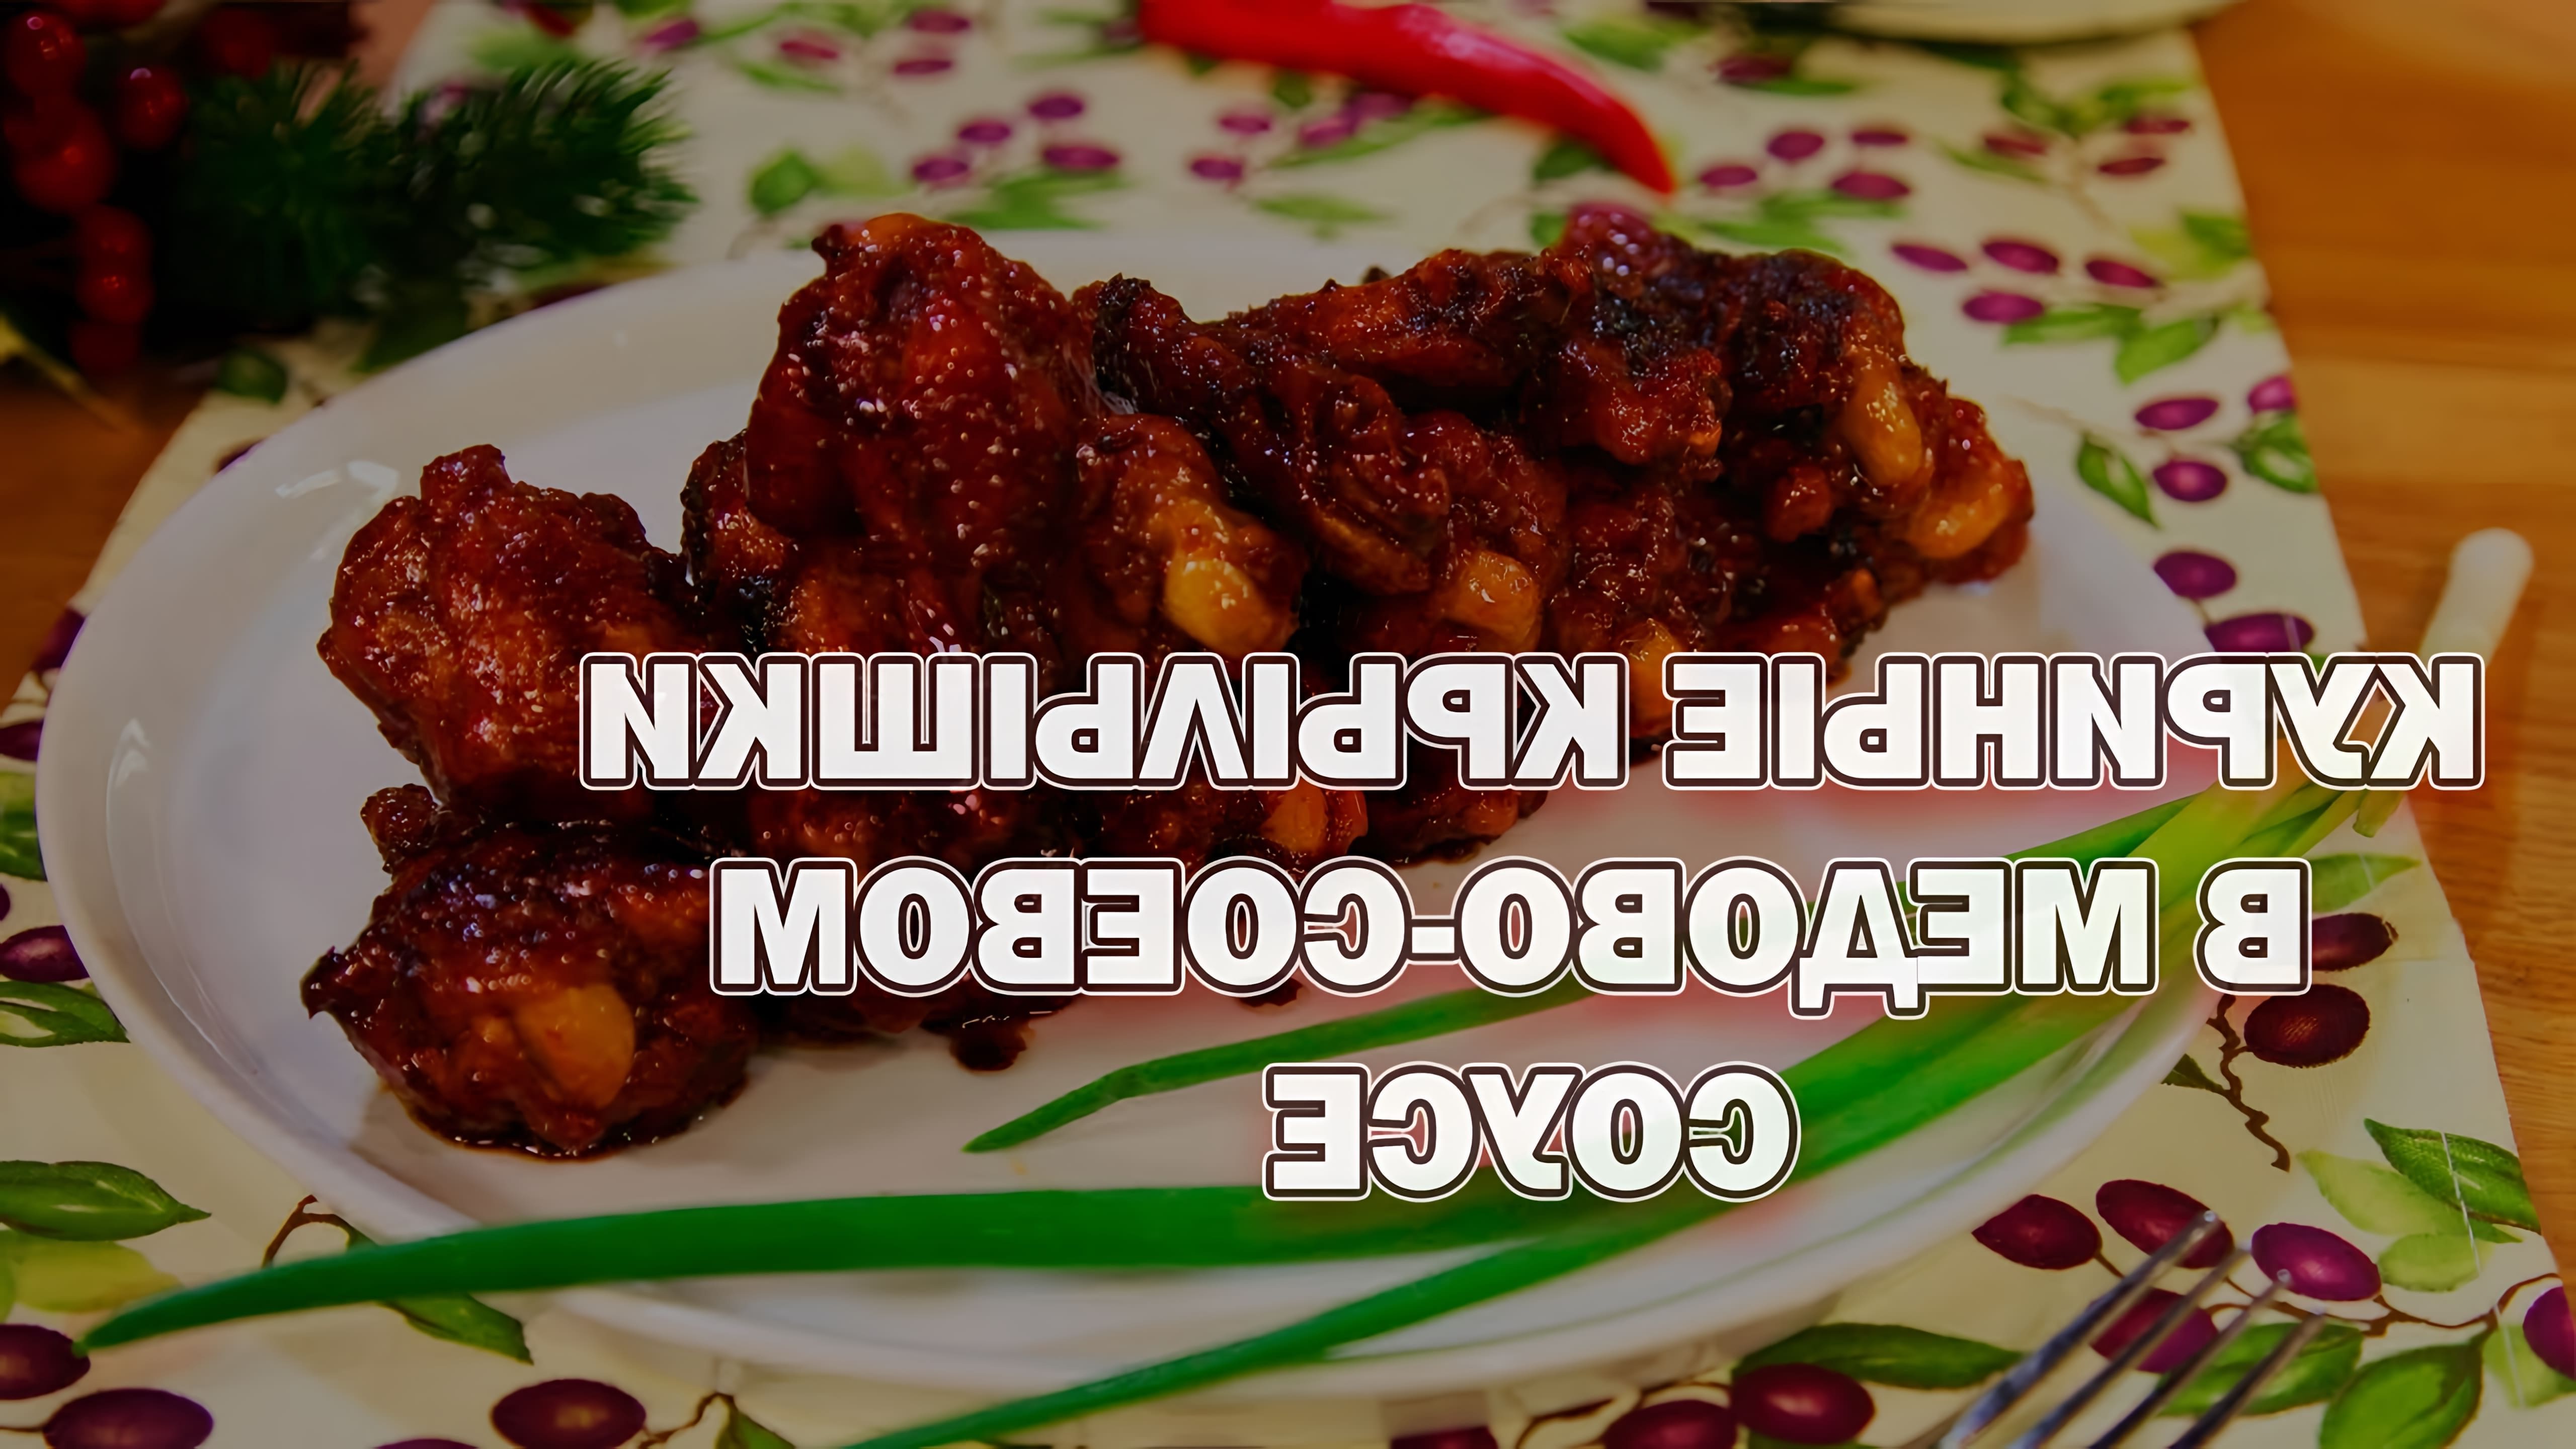 В этом видео демонстрируется быстрый и простой рецепт приготовления куриных крылышек в медово-соевом соусе